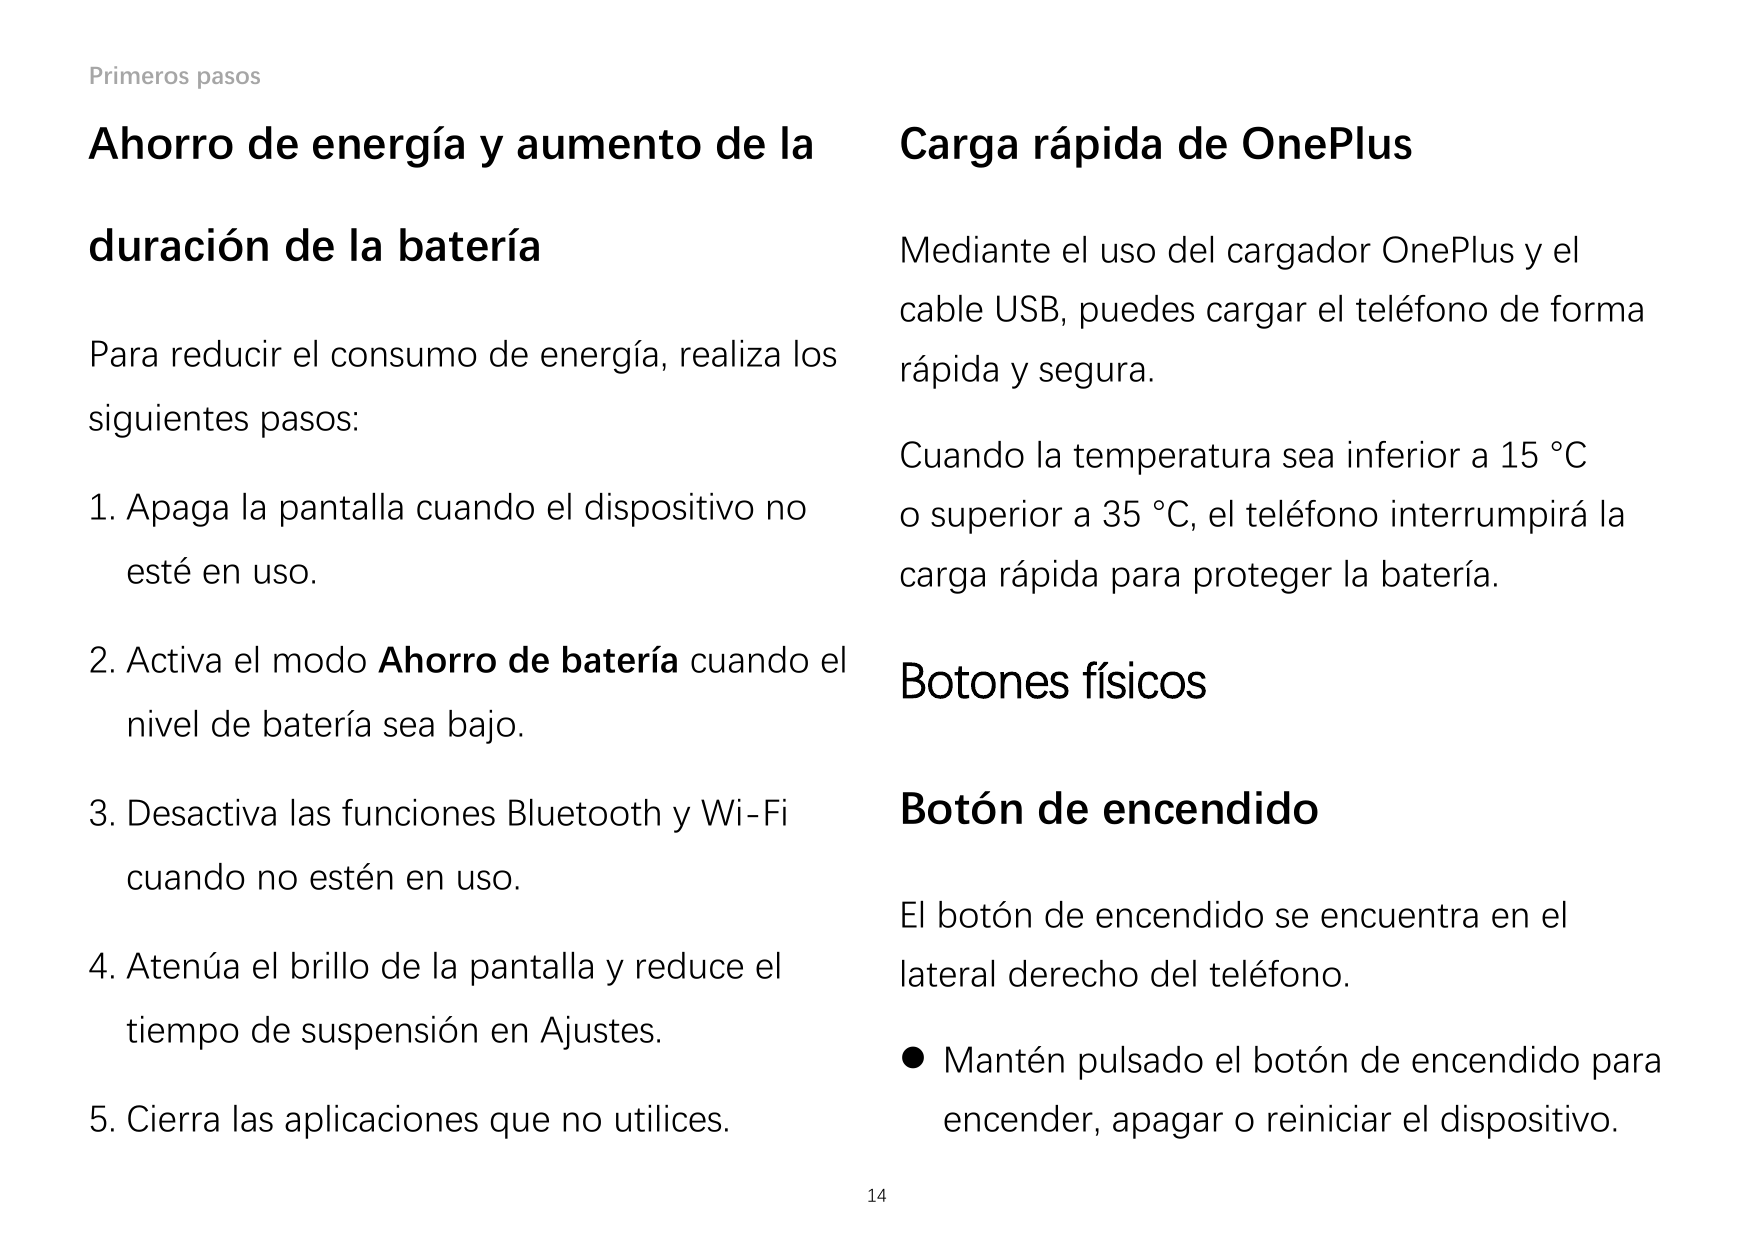 Primeros pasosAhorro de energía y aumento de laCarga rápida de OnePlusduración de la bateríaMediante el uso del cargador OnePlus